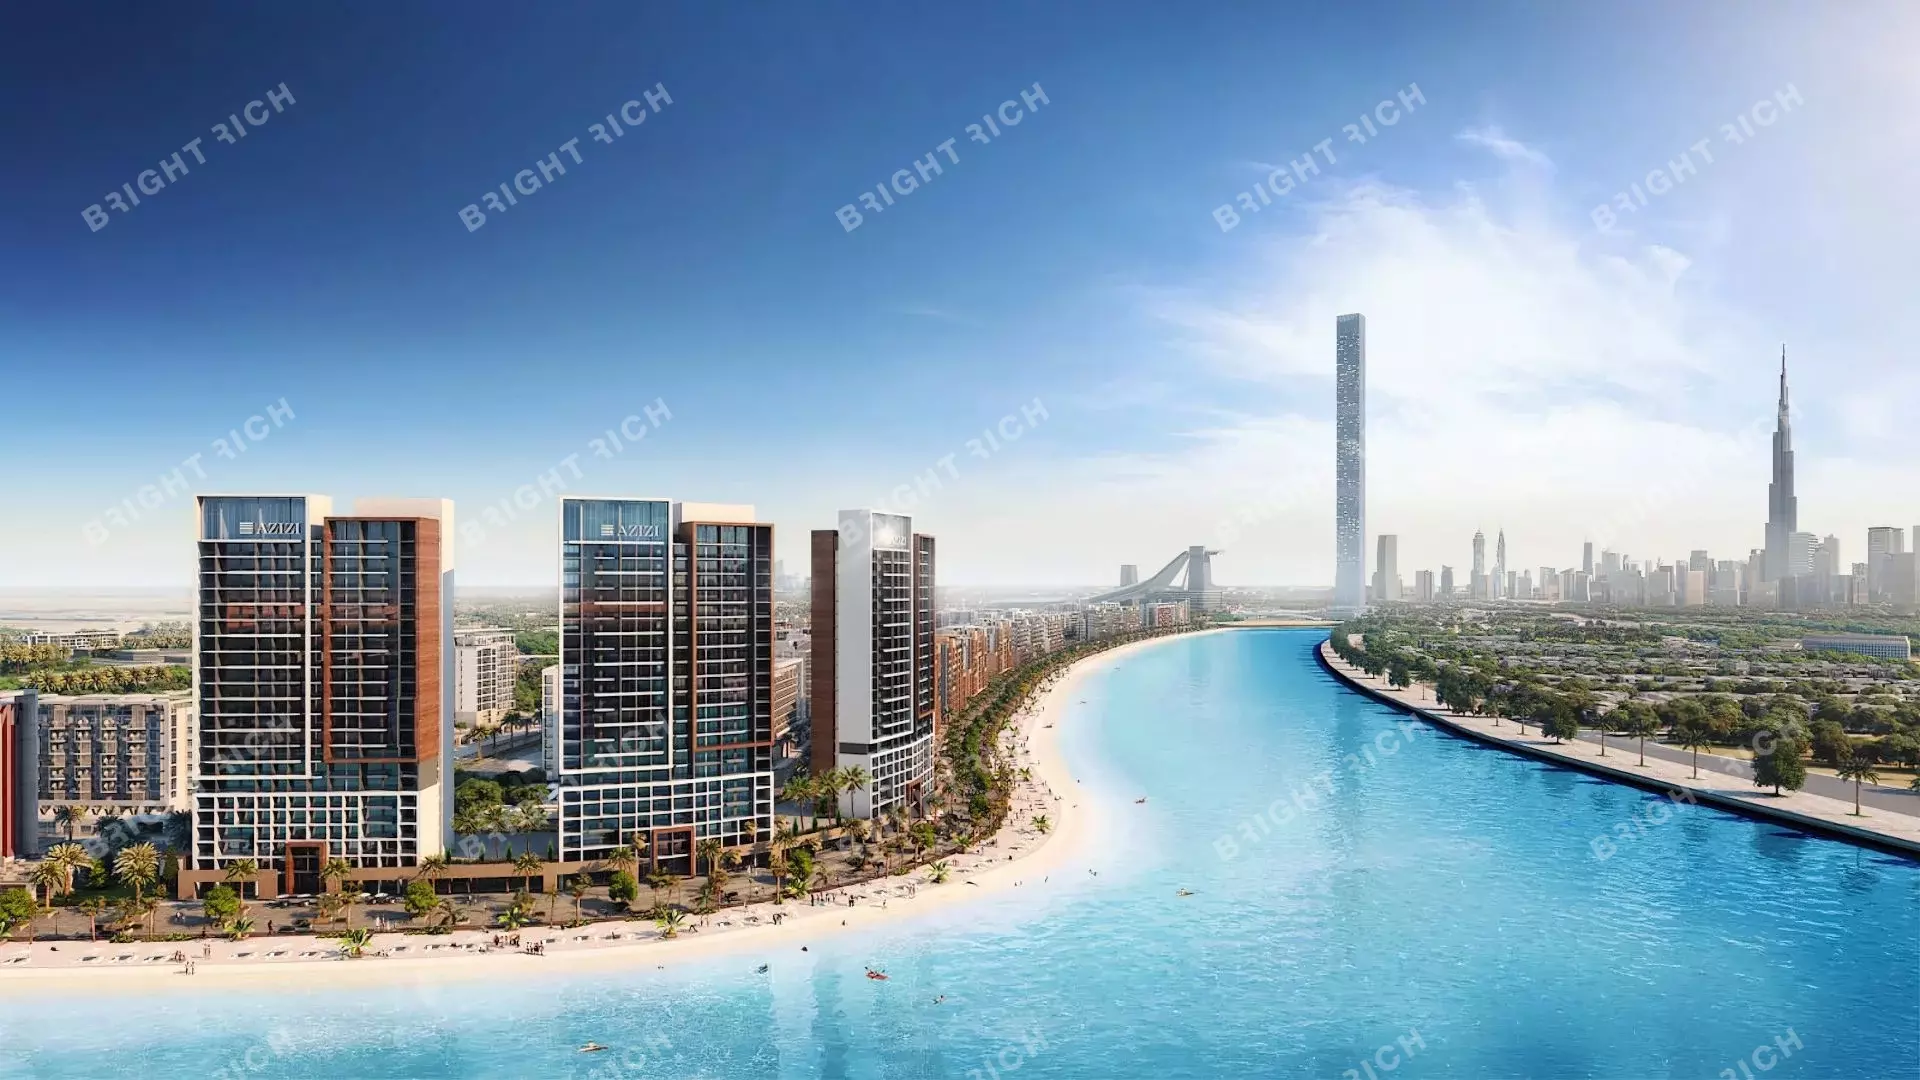 Azizi Riviera Building 63, apart complex in Dubai - 0